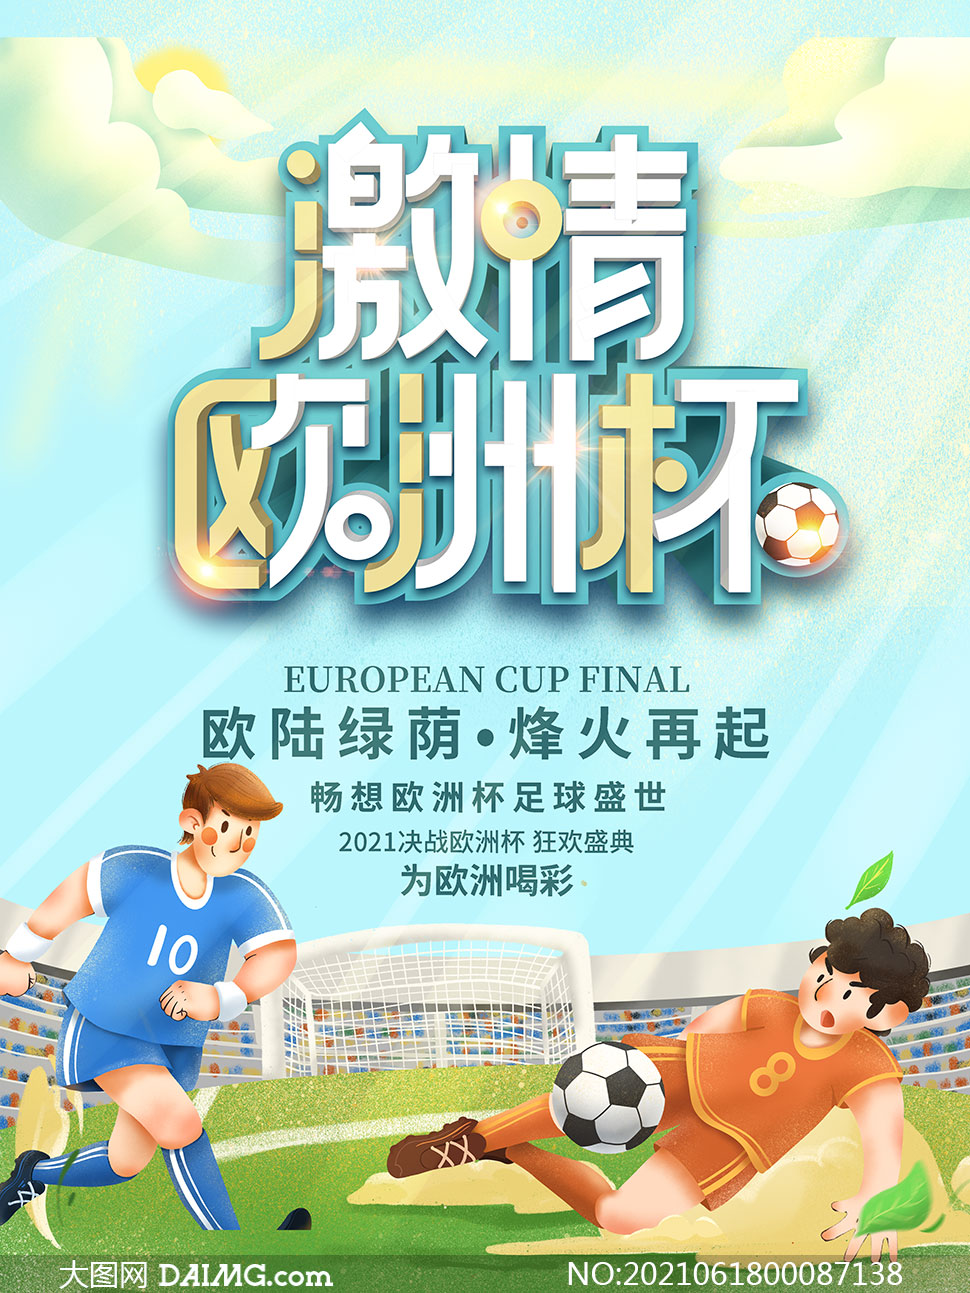 2021激情欧洲杯宣传海报设计psd素材